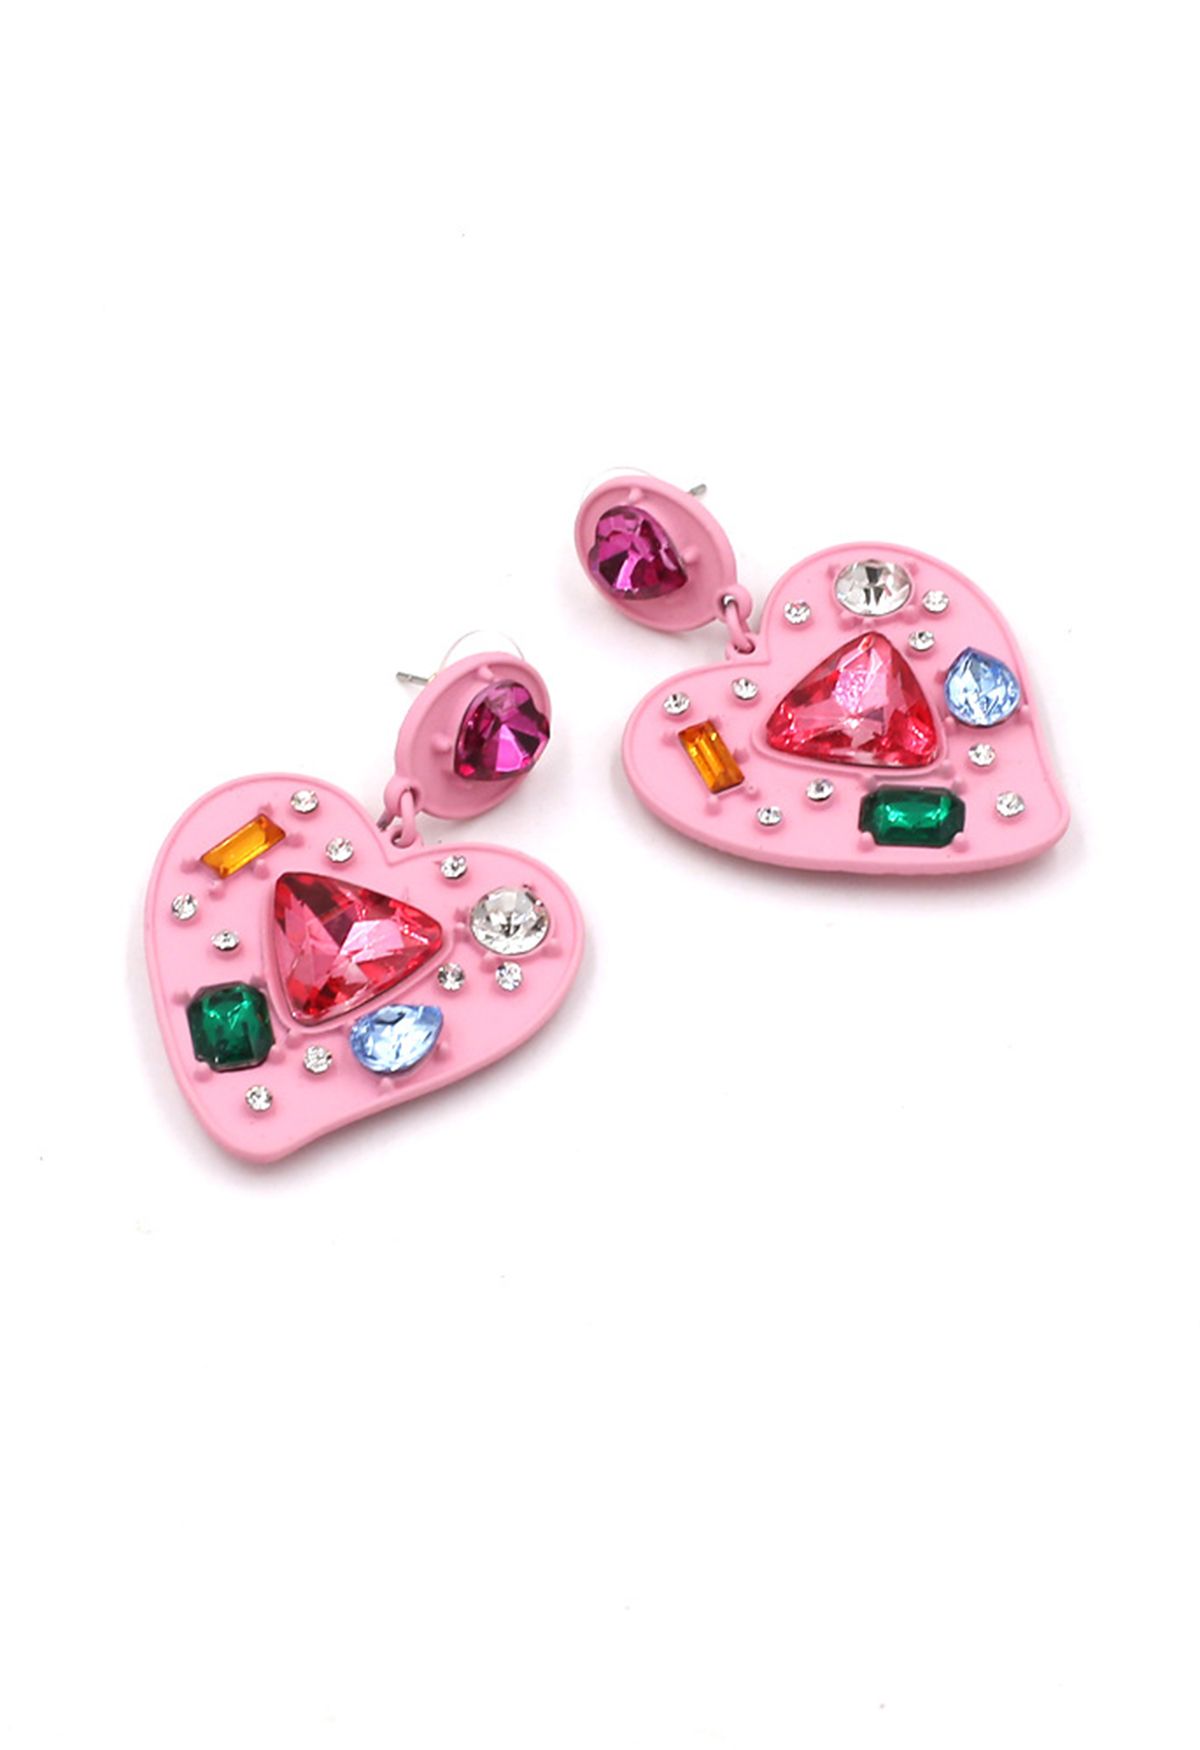 Boucles d'oreilles en cristal multicolore en forme de coeur en rose